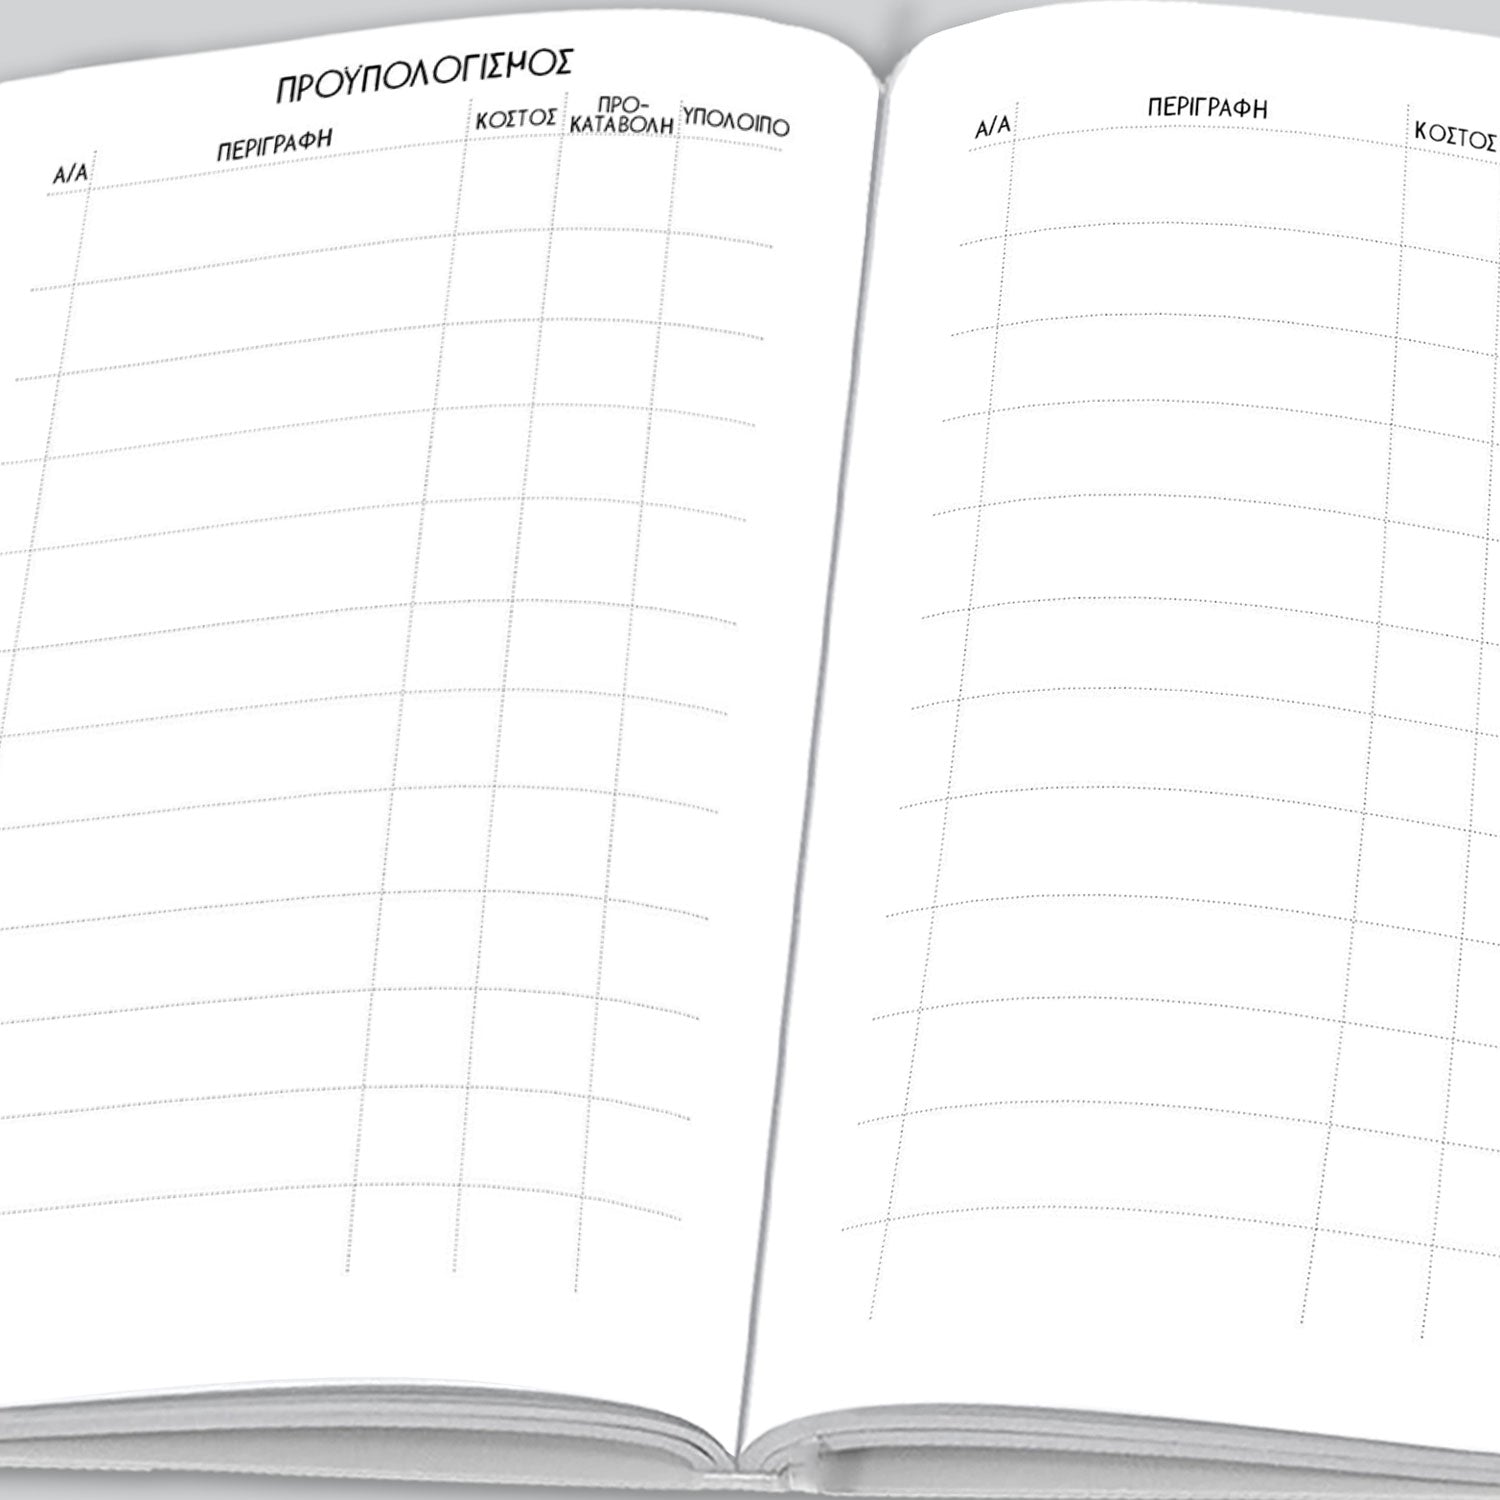 Το Ημερολόγιο της Βάπτισής μου - moodbook